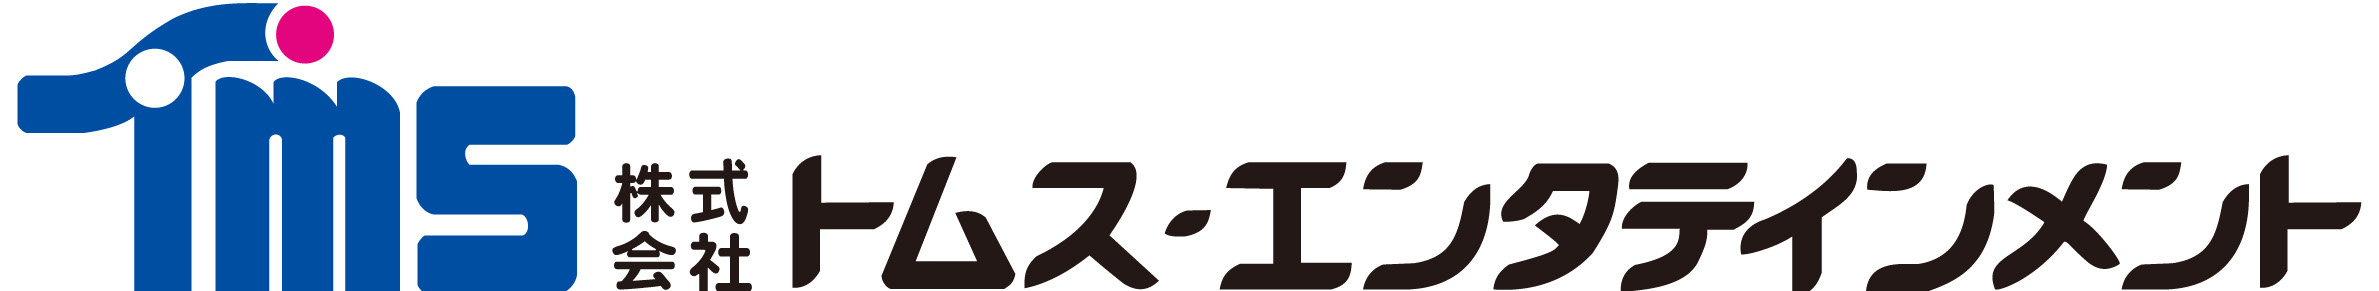 弱虫ペダル New Generation オリジナルカレンダー17 9月16日に予約販売を開始 株式会社トムス エンタテインメントのプレスリリース